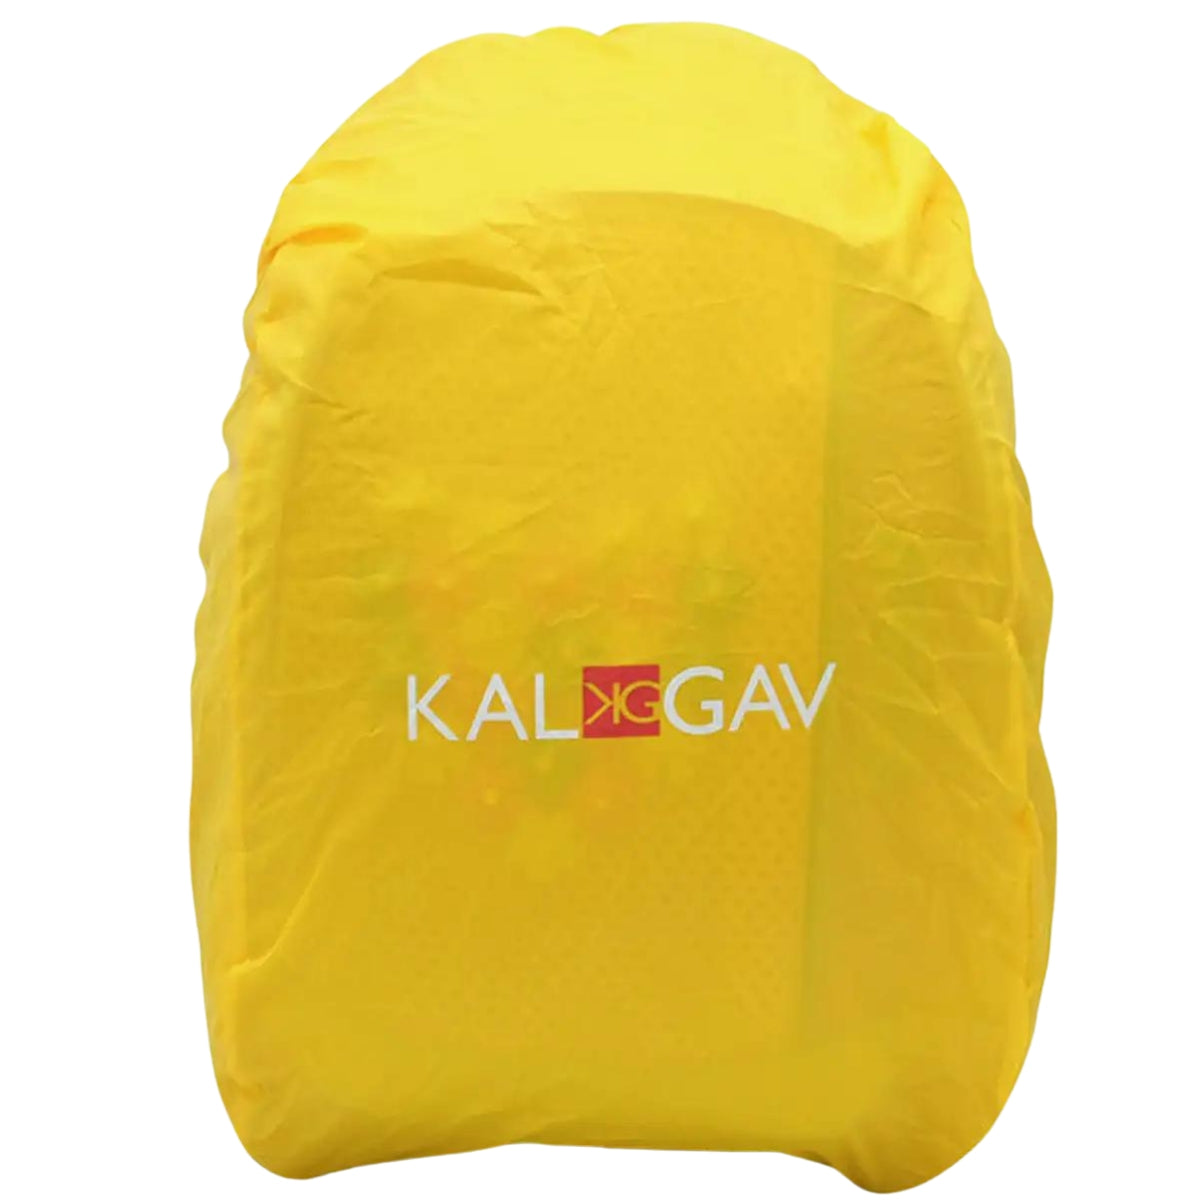 תיק  X-Bag קל גב הנוקמים  כחול/רויאל